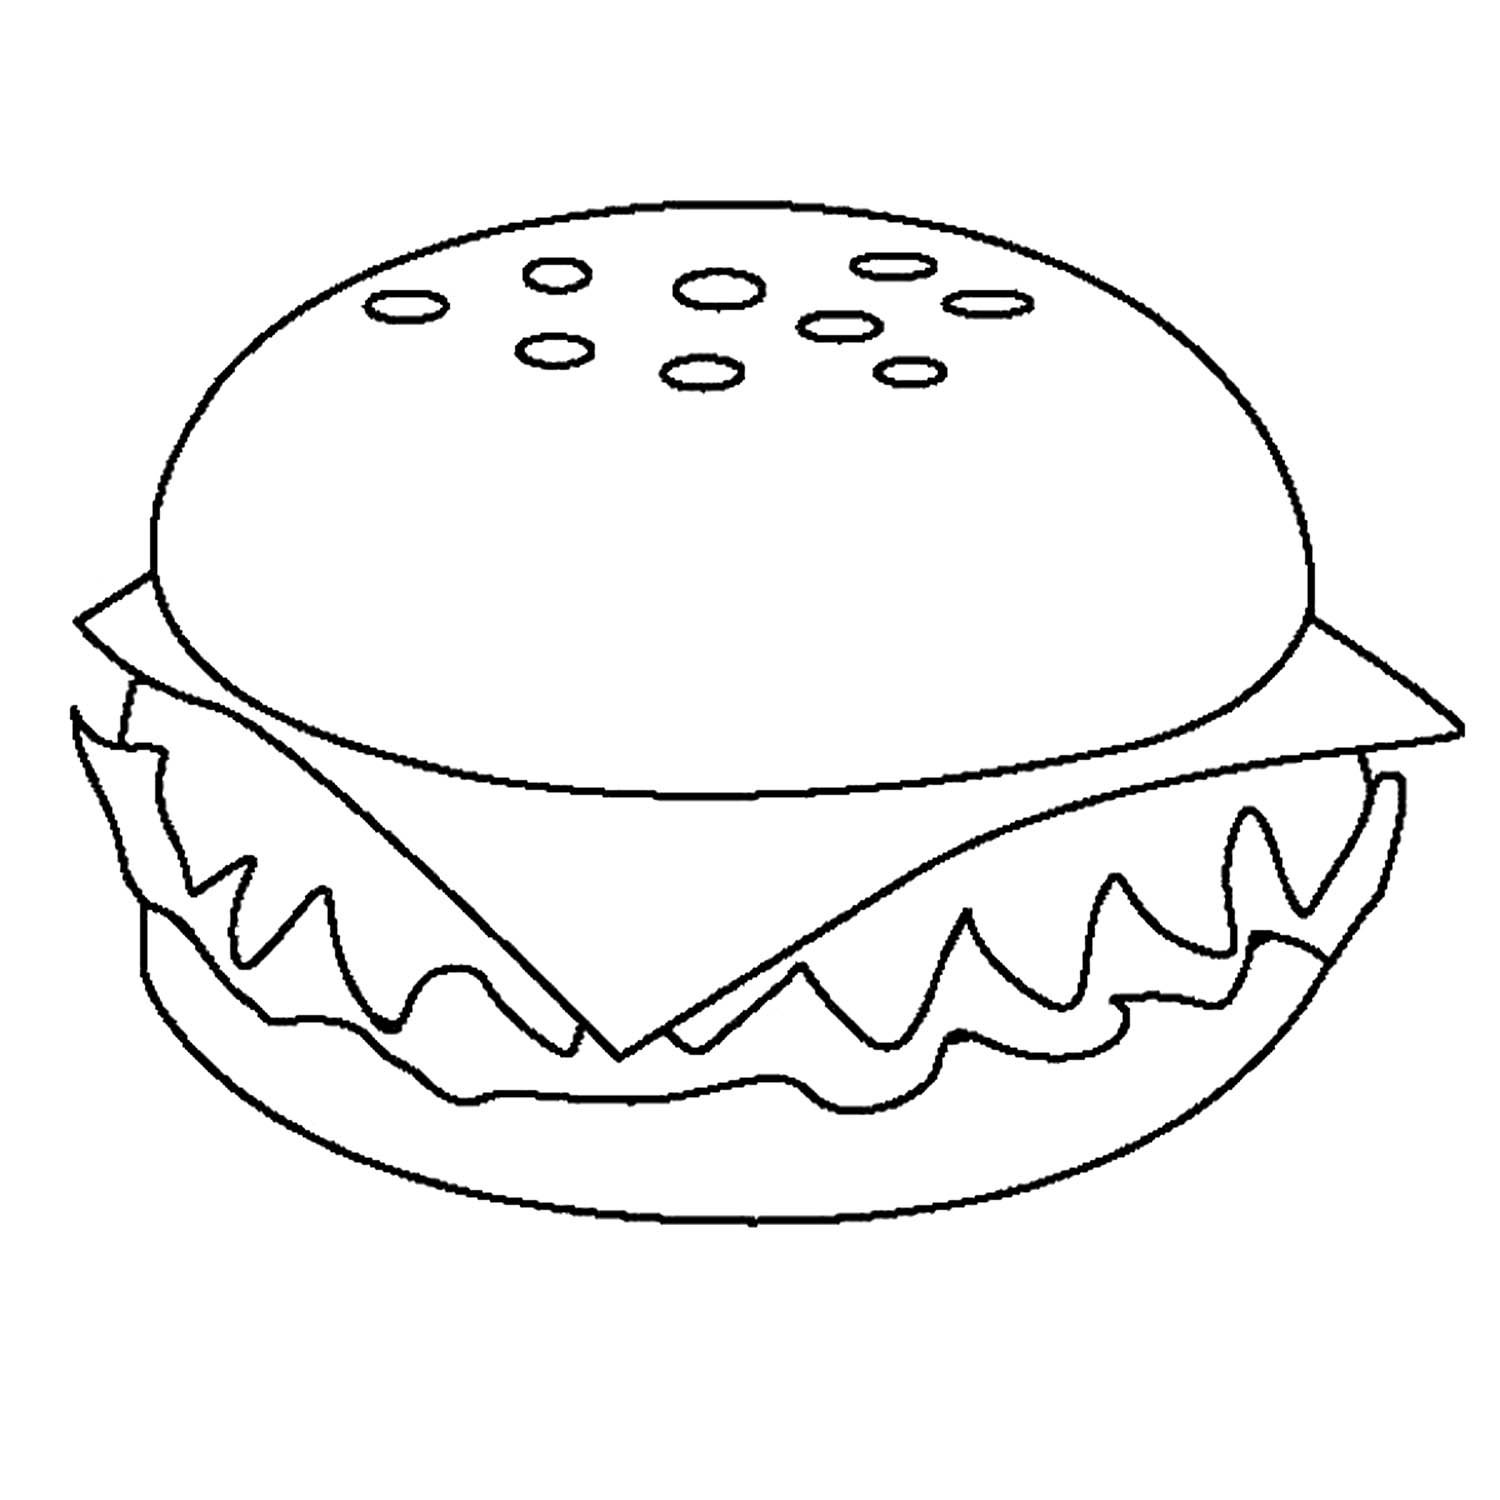 Раскраски фуд. Раскраска гамбургер. Раскраска бургер. Гамбургер раскраска для детей. Раскраска еда.